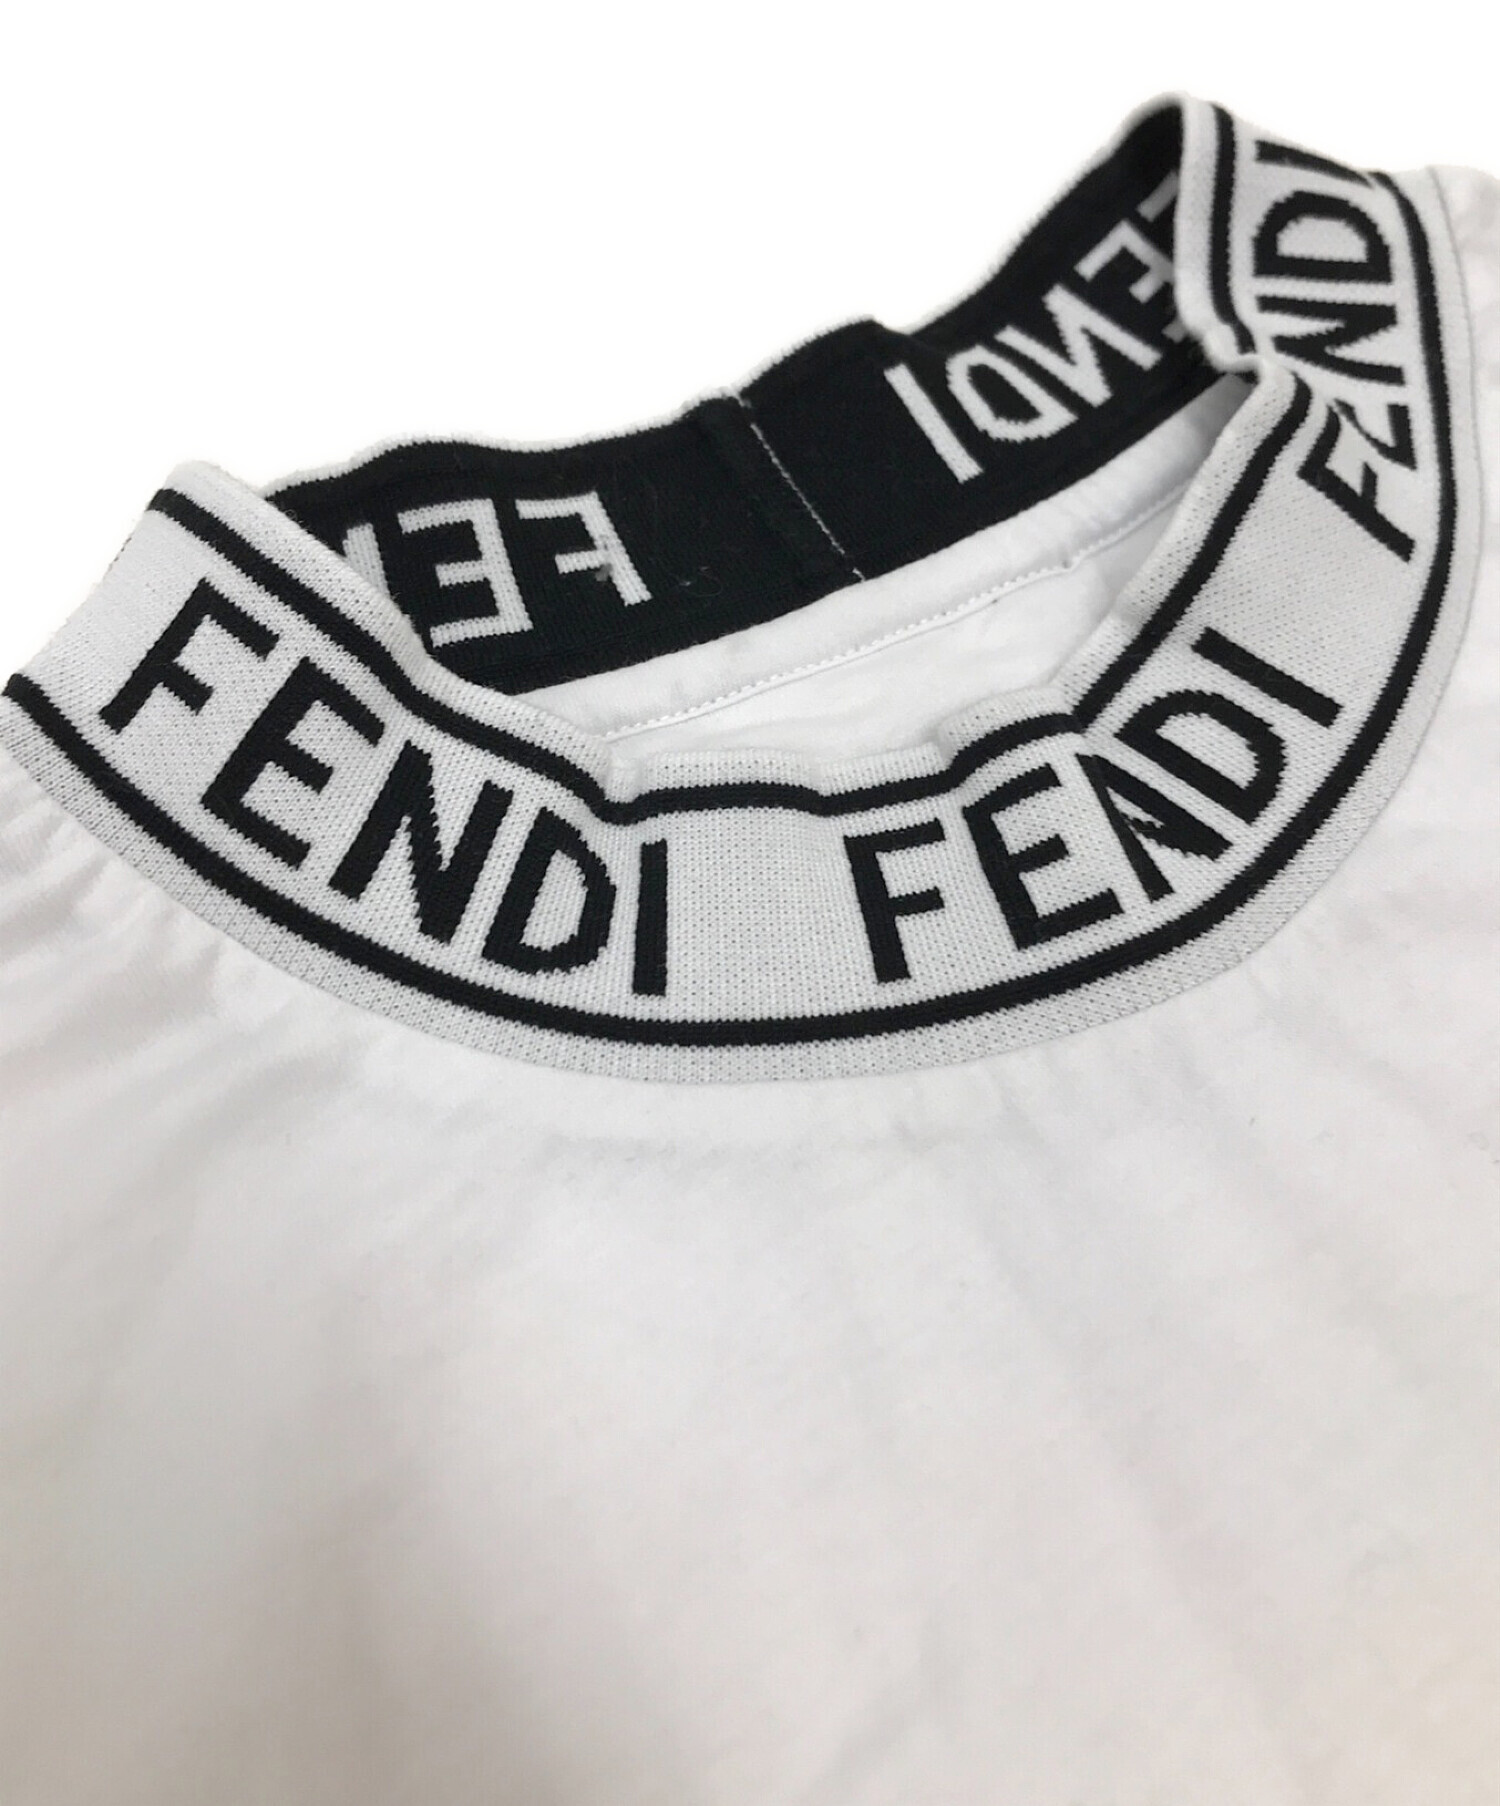 新版 20AW S ホワイト Tシャツ ロゴ ハイネック フェンディ FENDI T